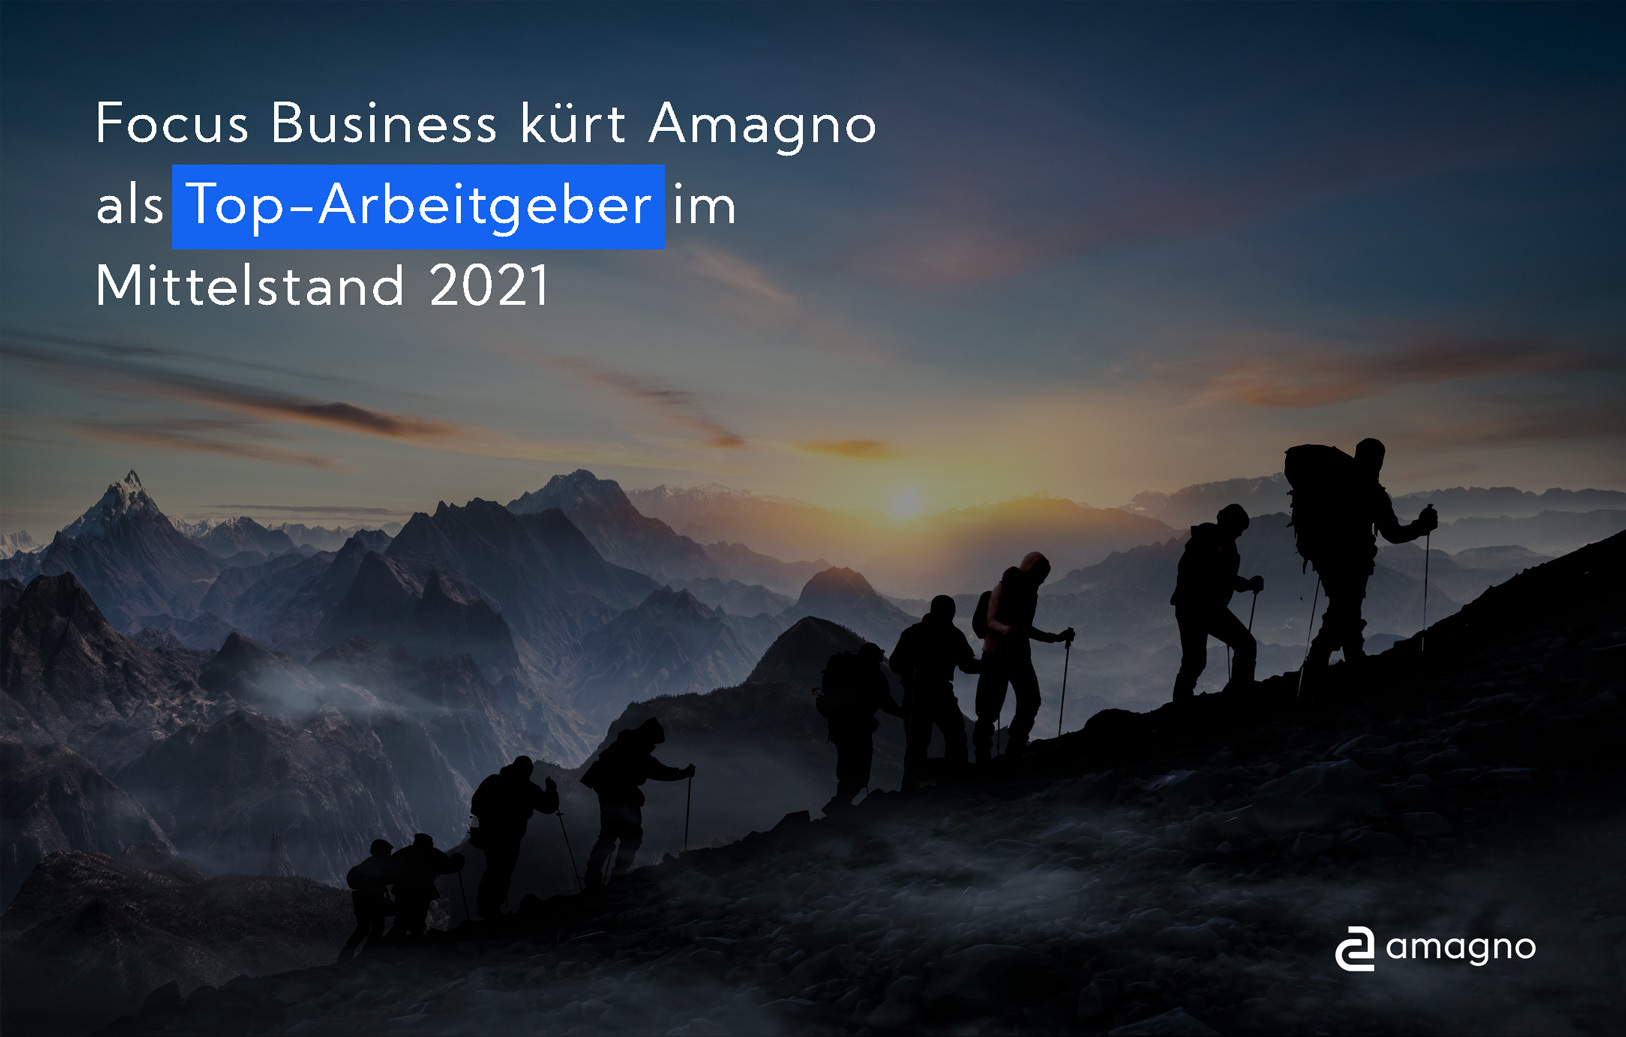 Focus Business: Amagno 2021 erneut als Top-Arbeitgeber ausgezeichnet